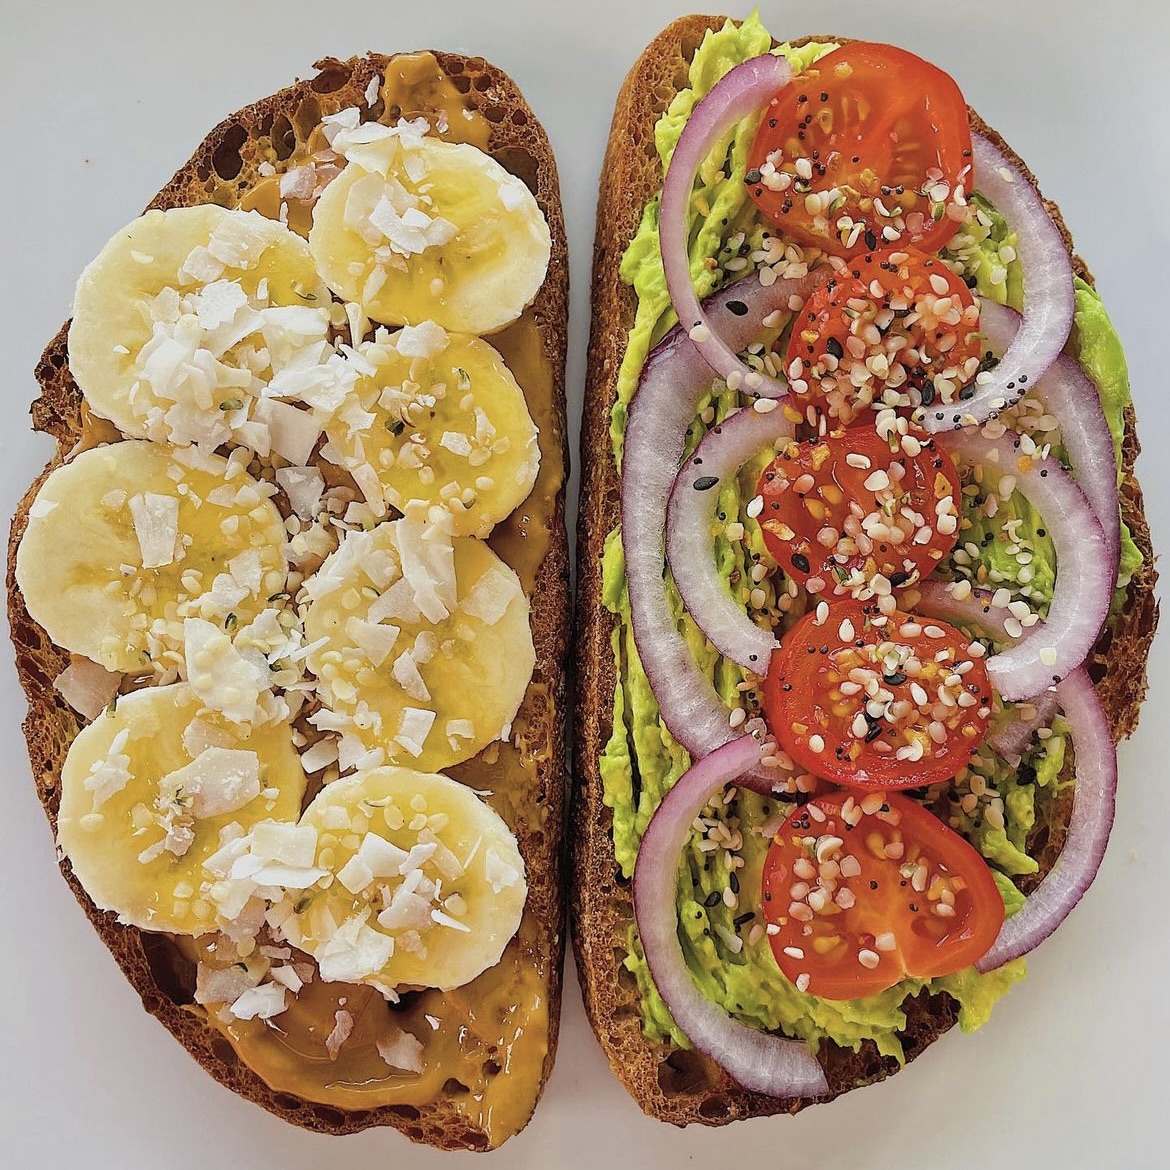 peanut butter-banana and avocado toasts